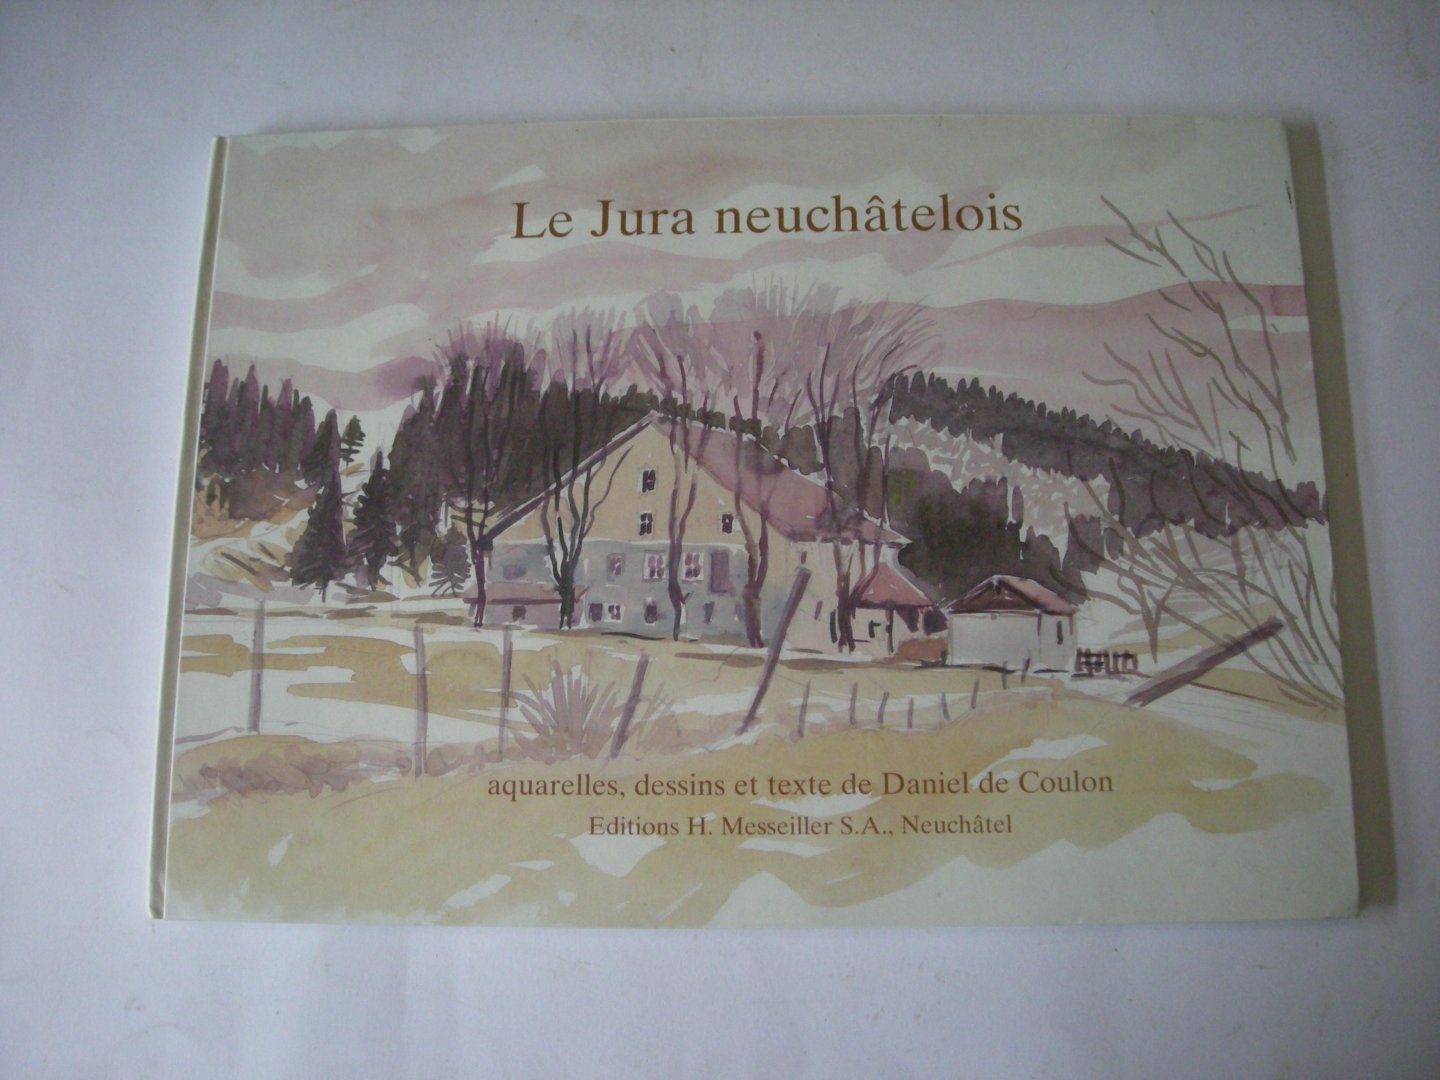 Coulon, Daniel de, aquarelles, dessins et texte - Le Jura neuchatelois